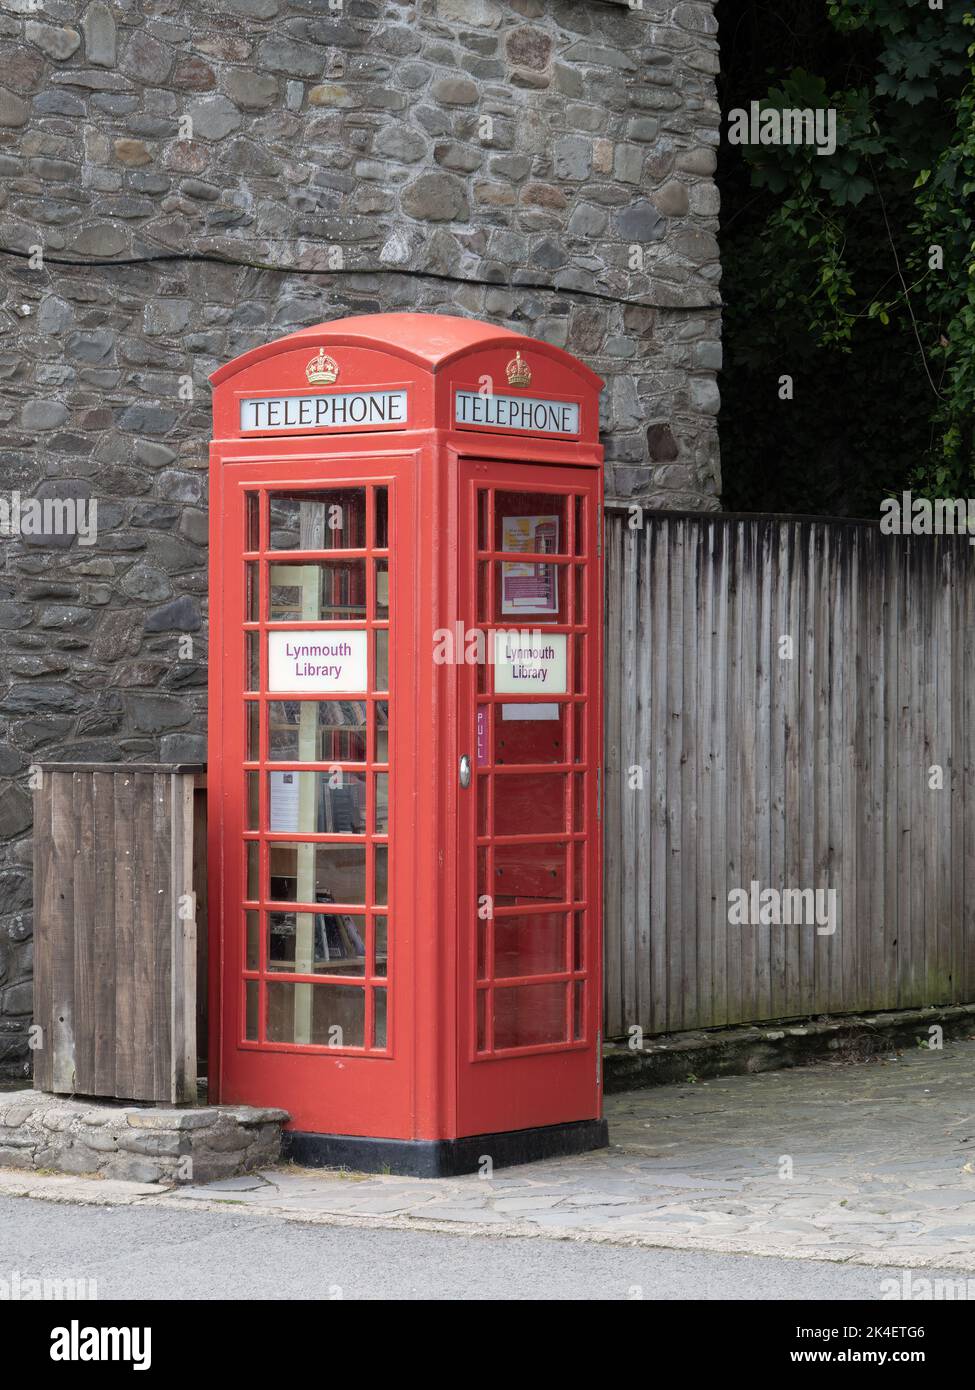 LYNMOUTH, DEVON, SETTEMBRE 11 2022: Biblioteca di Lynmouth in una vecchia scatola rossa riposta del telefono. Foto Stock